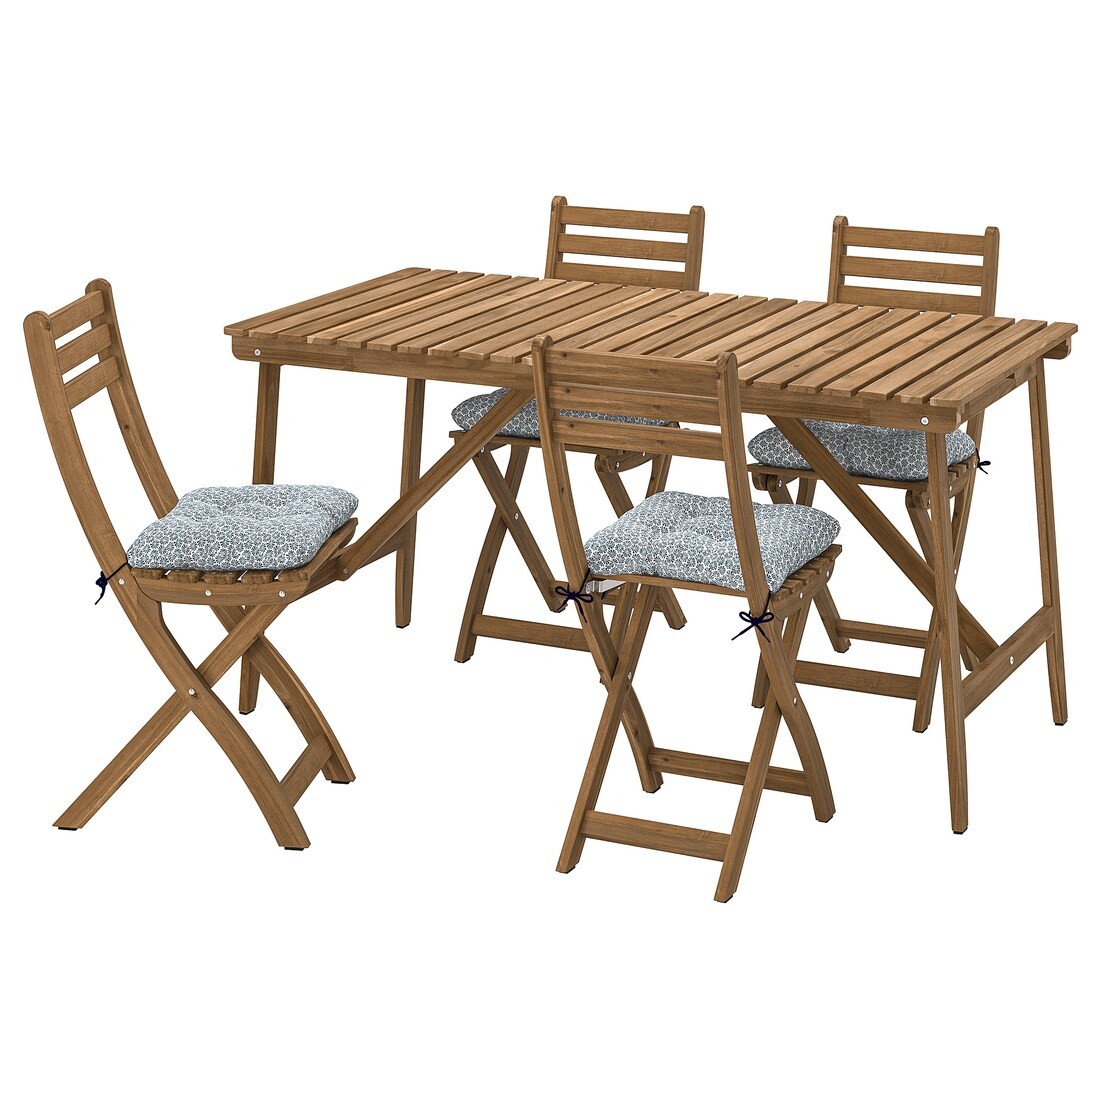 ASKHOLMEN Стол и 4 складных стула, для сада, темно-коричневый/синий Klösan, 143x75 см